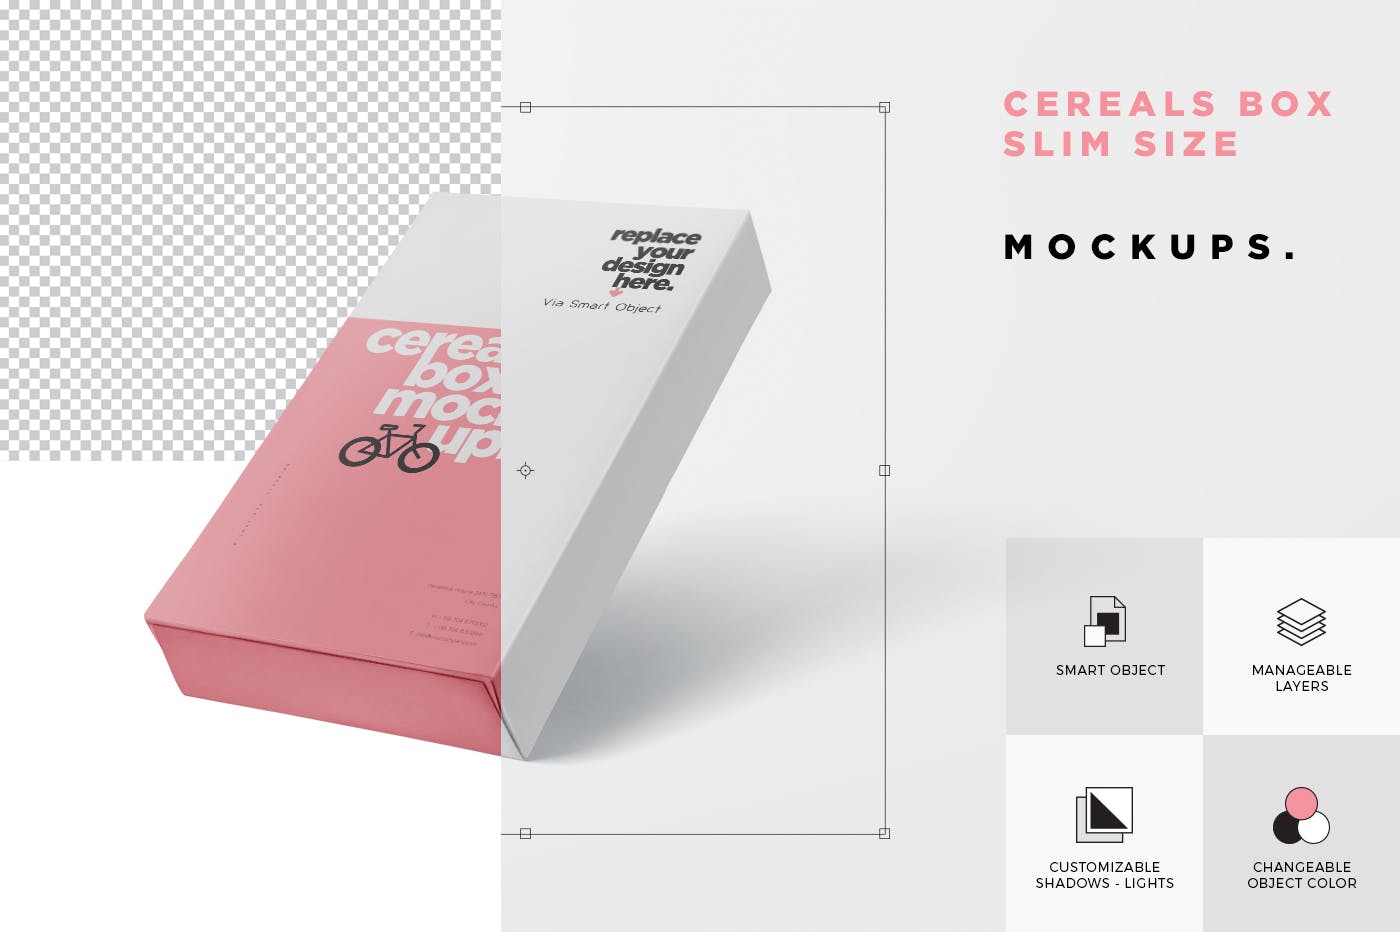 香烟/避孕套/扑克牌适用的超薄包装盒外观设计样机 Cereals Box Mockup – Slim Size Box插图(5)